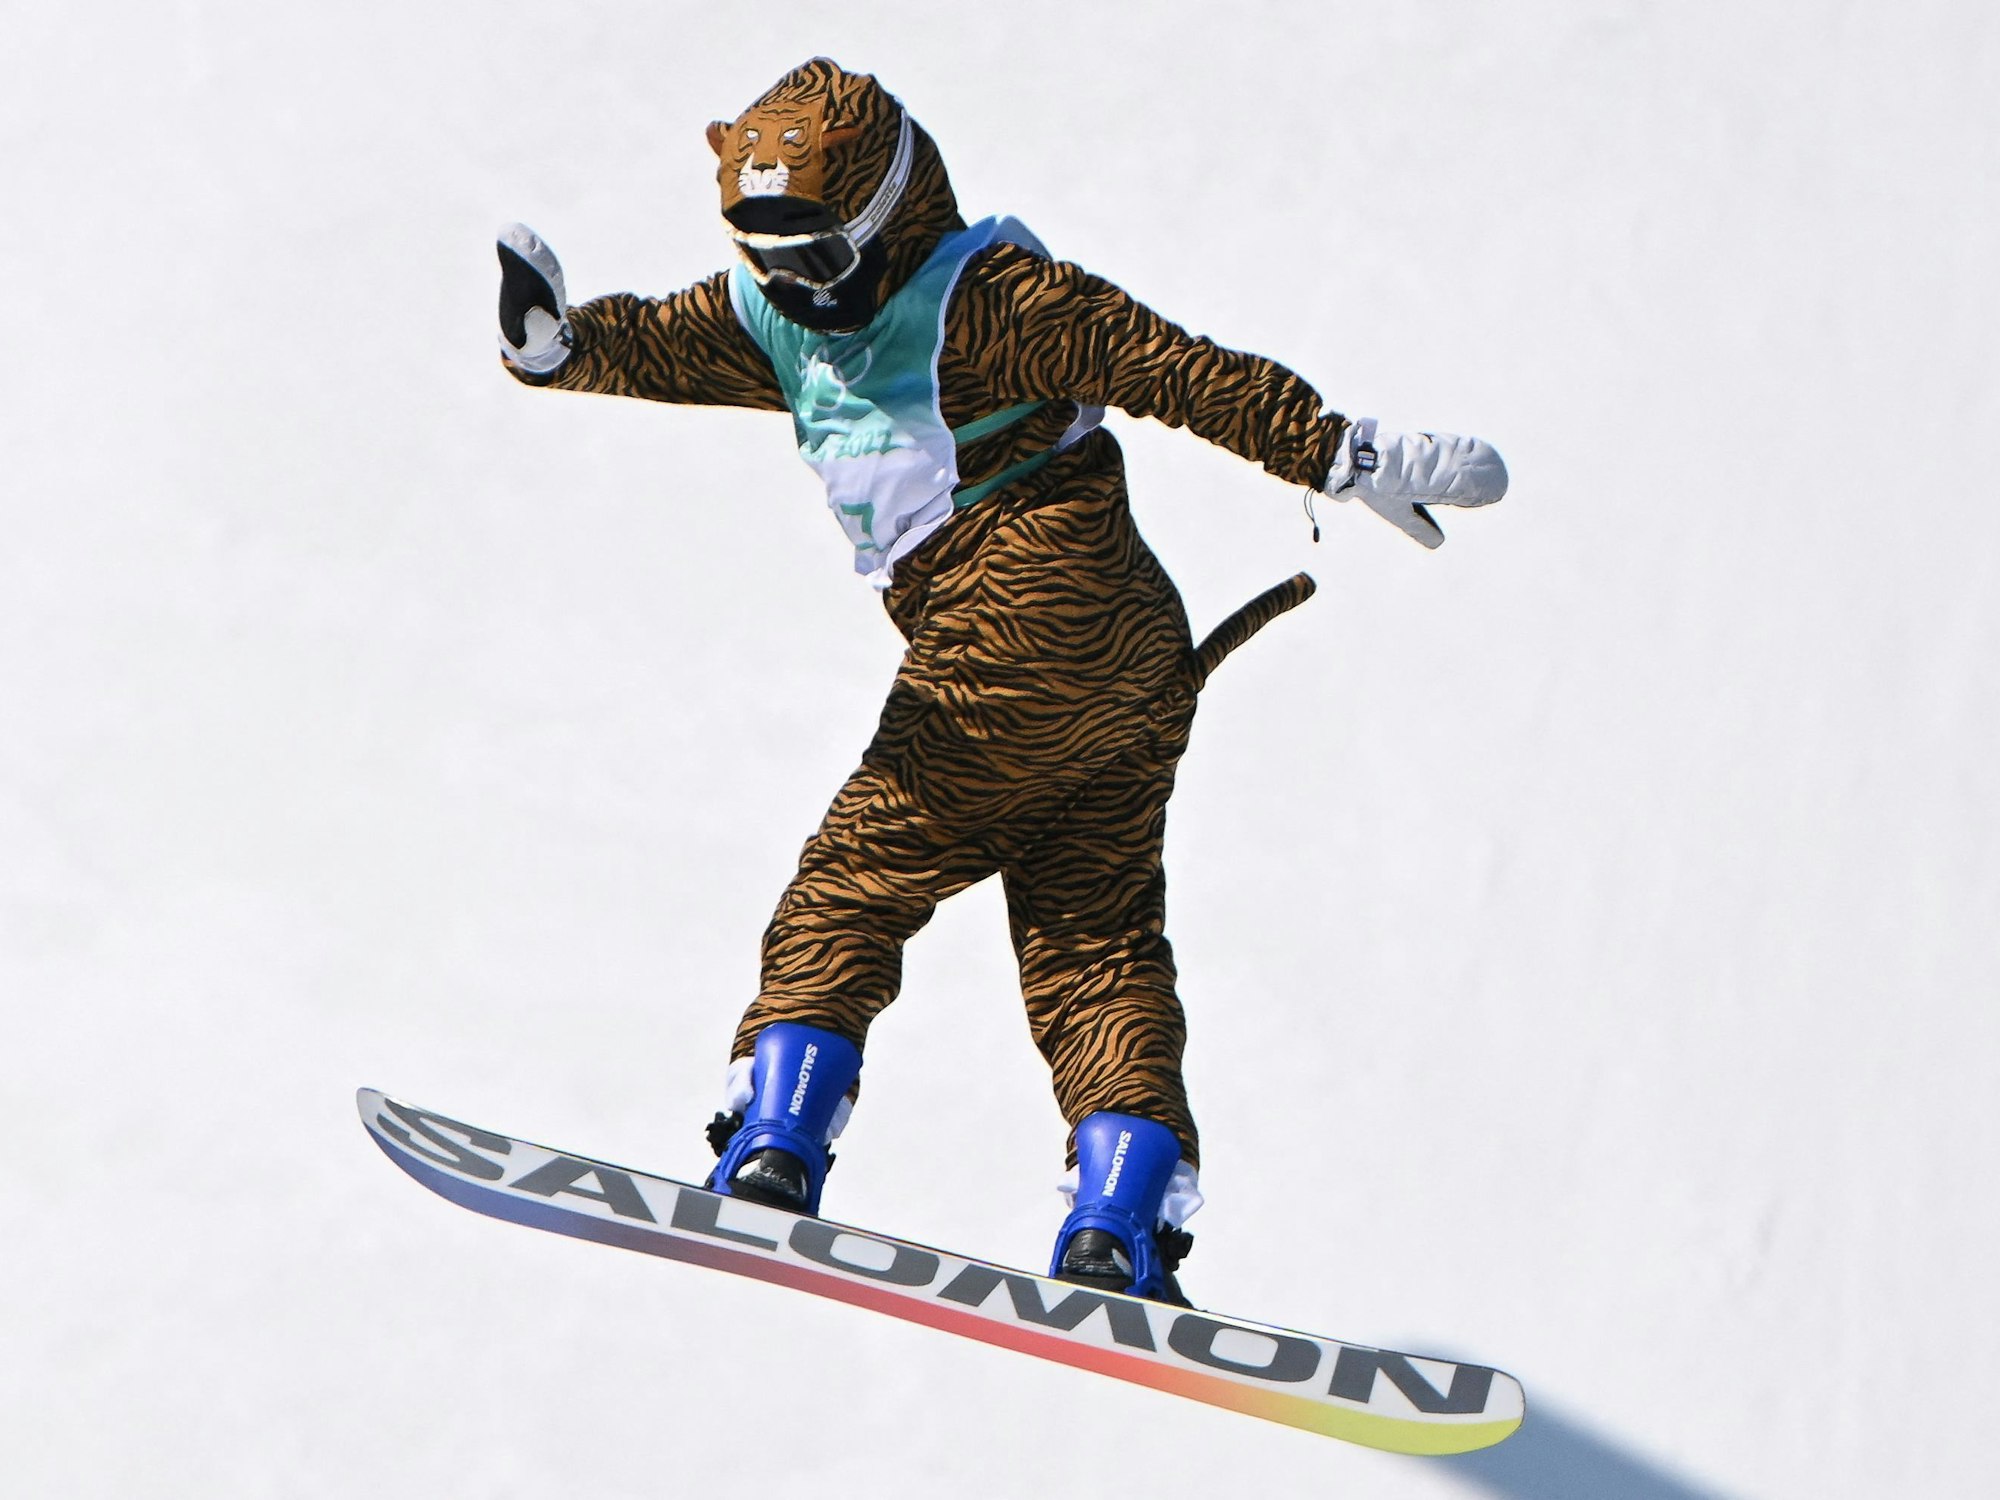 Die Französin Lucile Lefevre beim Snowboard-Wettbewerb der Frauen im Big Air bei den Olympischen Spielen in Peking am 14. Februar 2022.